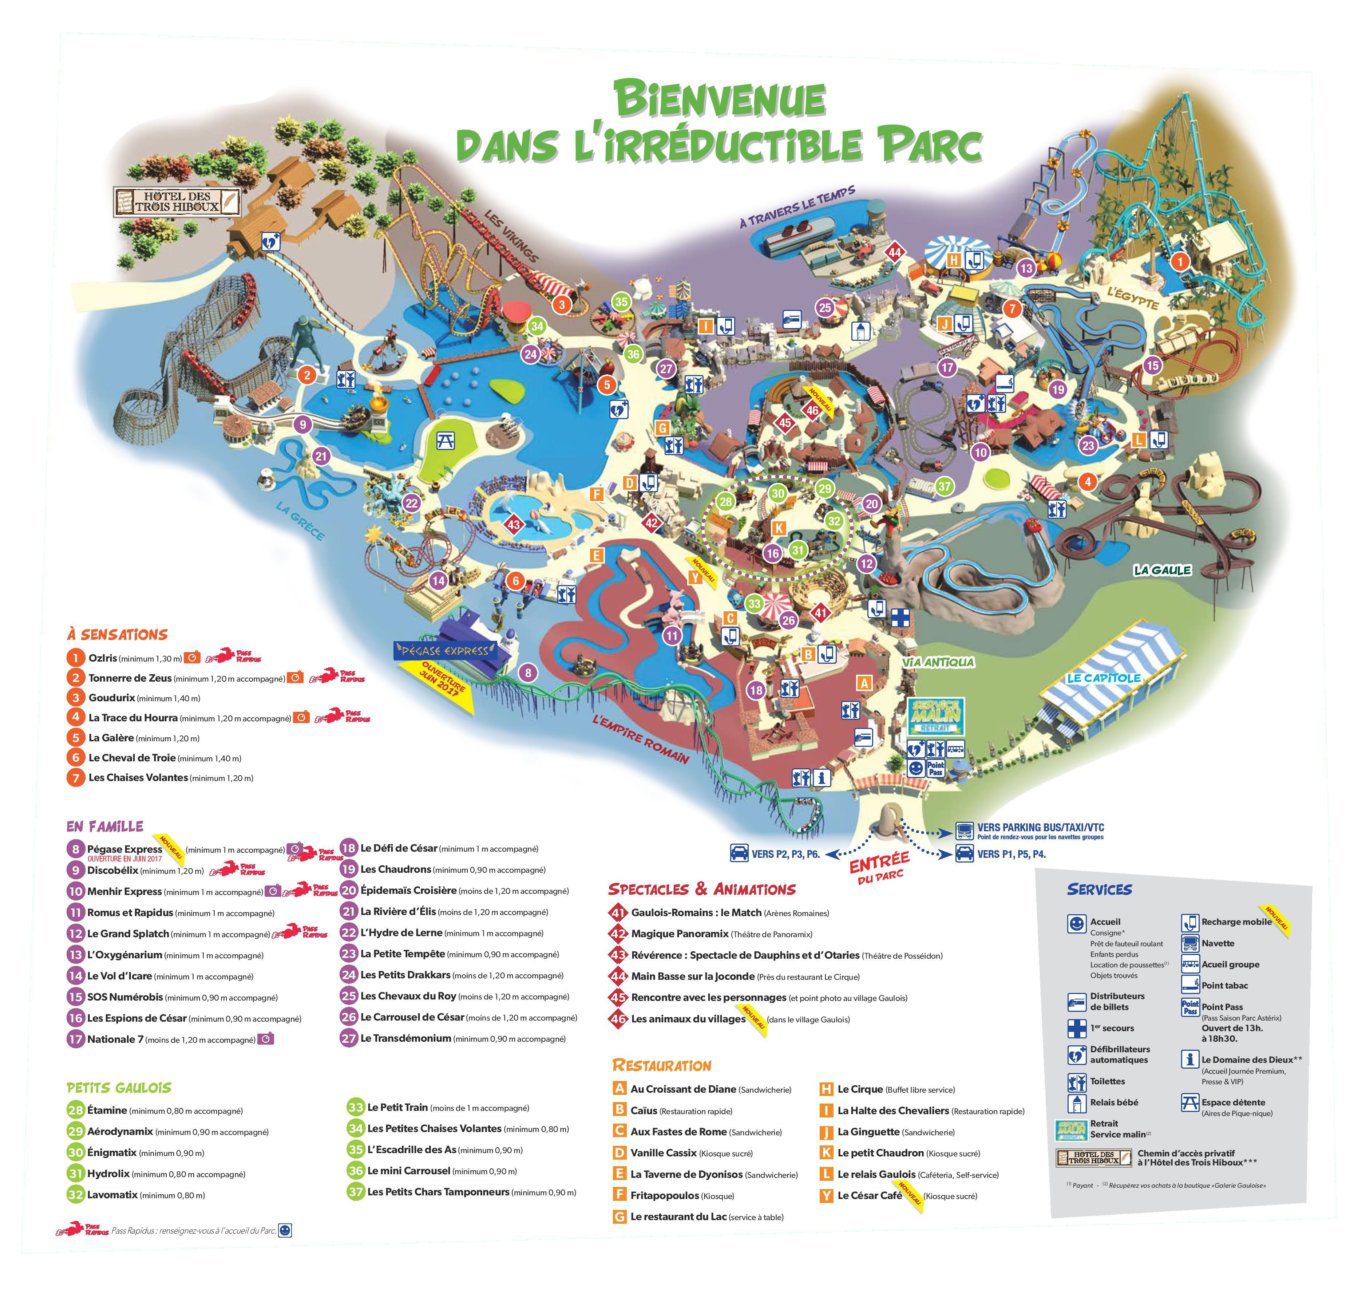 Les meilleurs parcs d'attractions de France, Carte interactive et infos 12